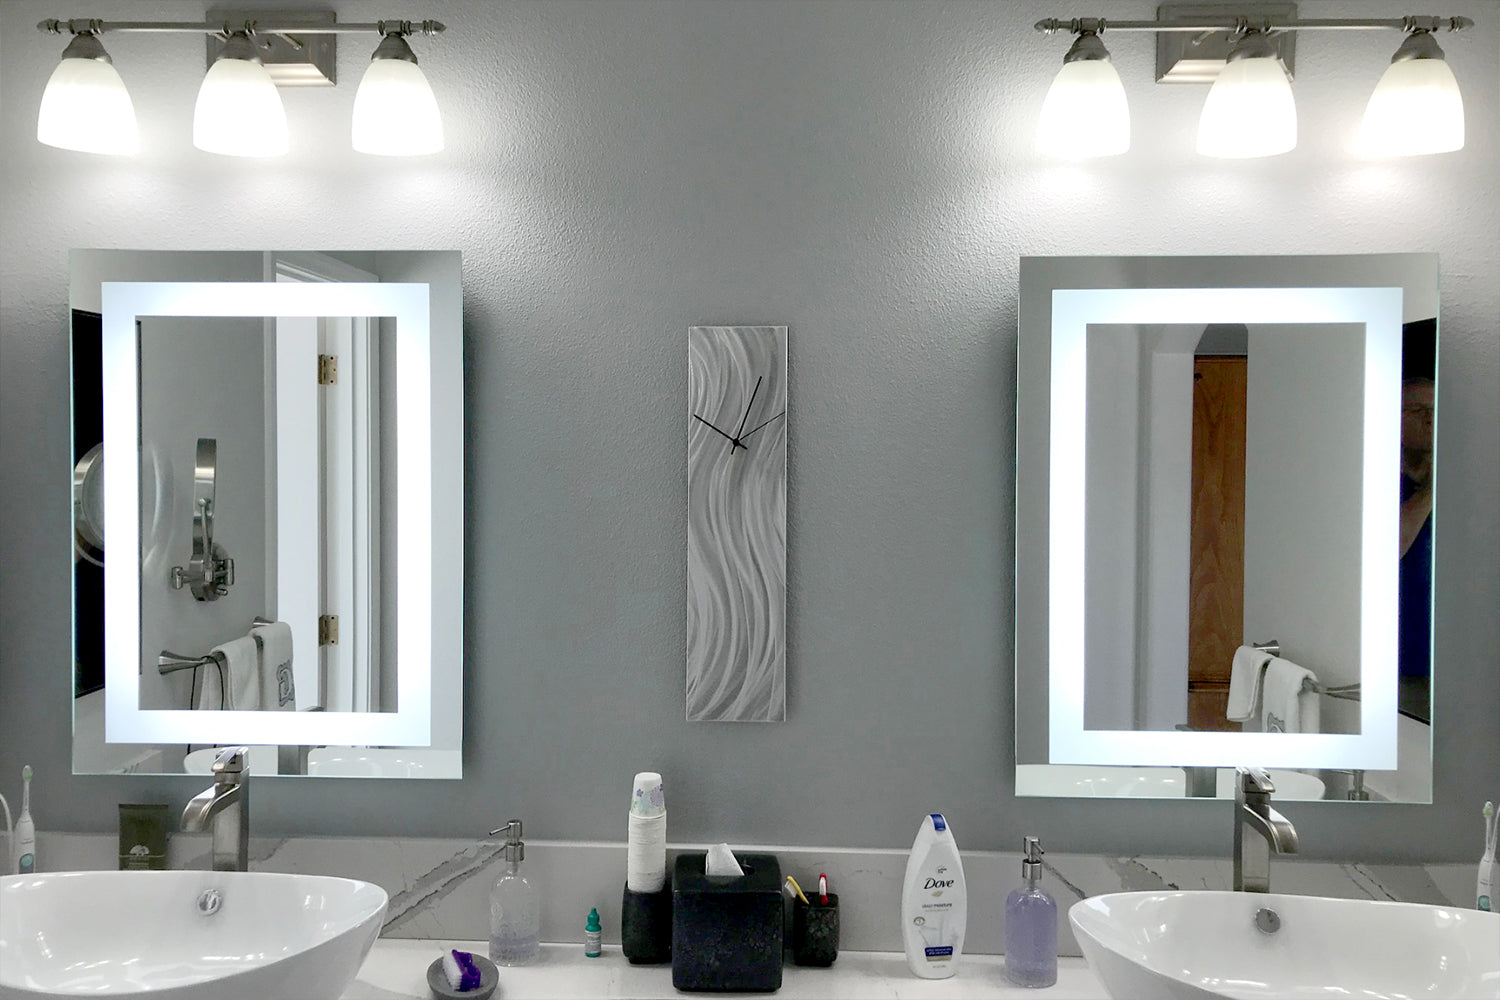 Sansome Bathroom Vanity Mirror